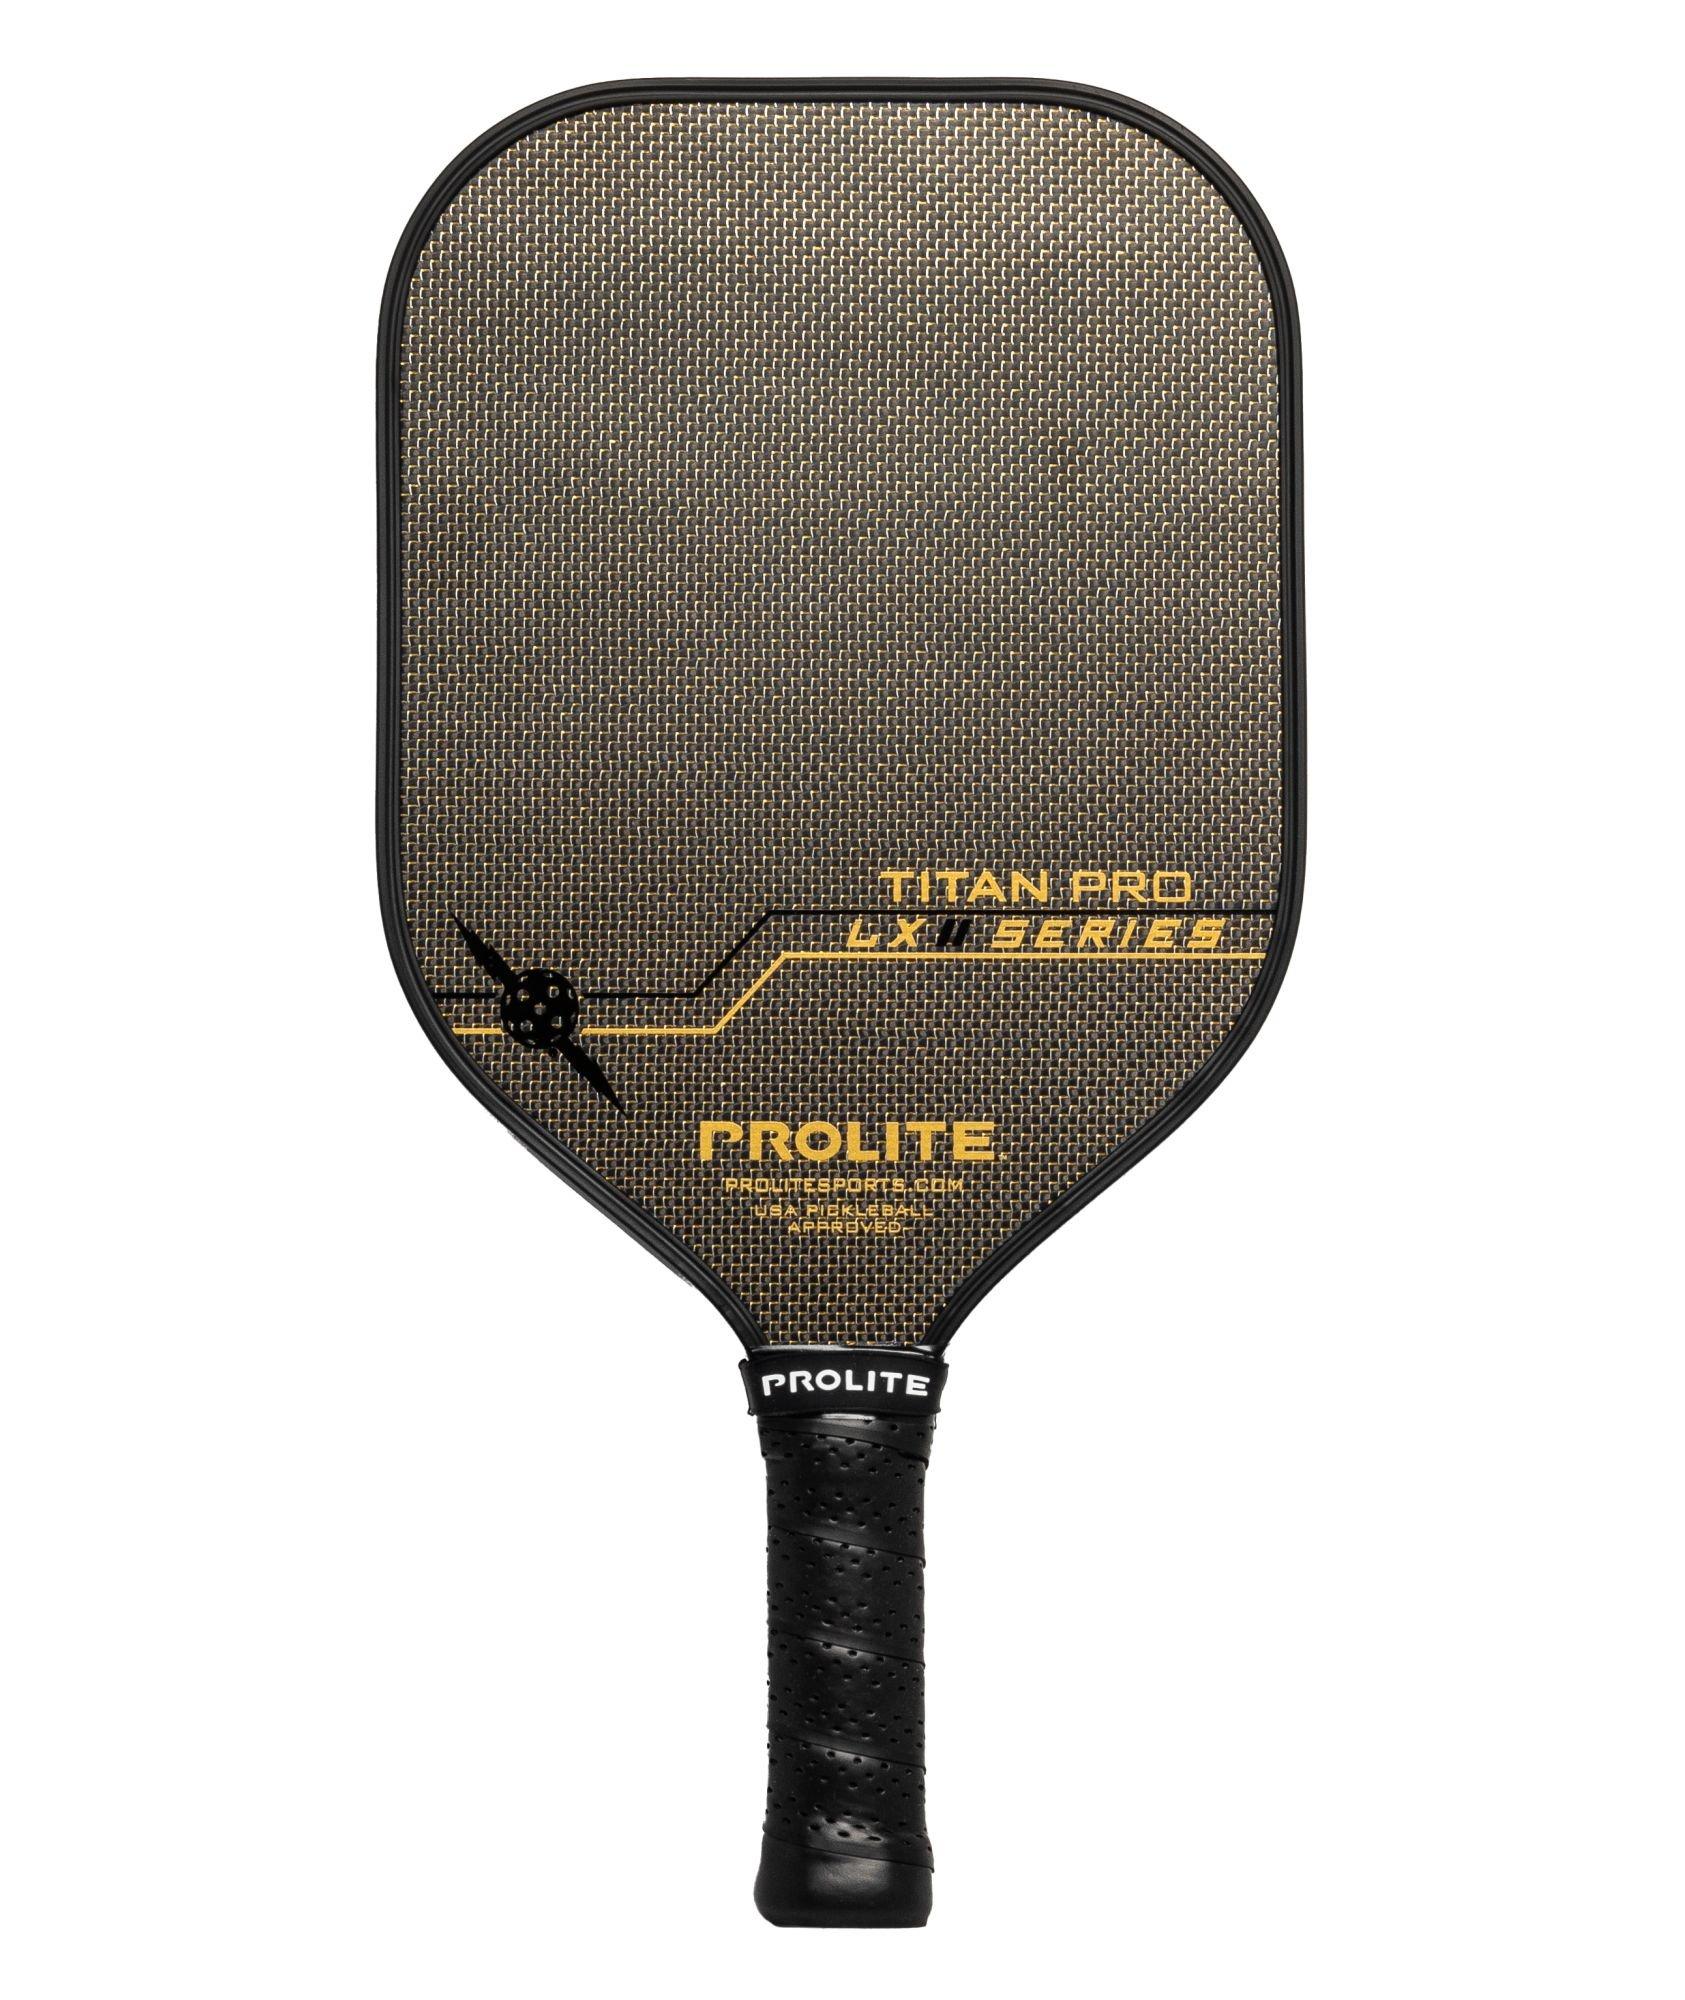 Titan Pro LX Paddle